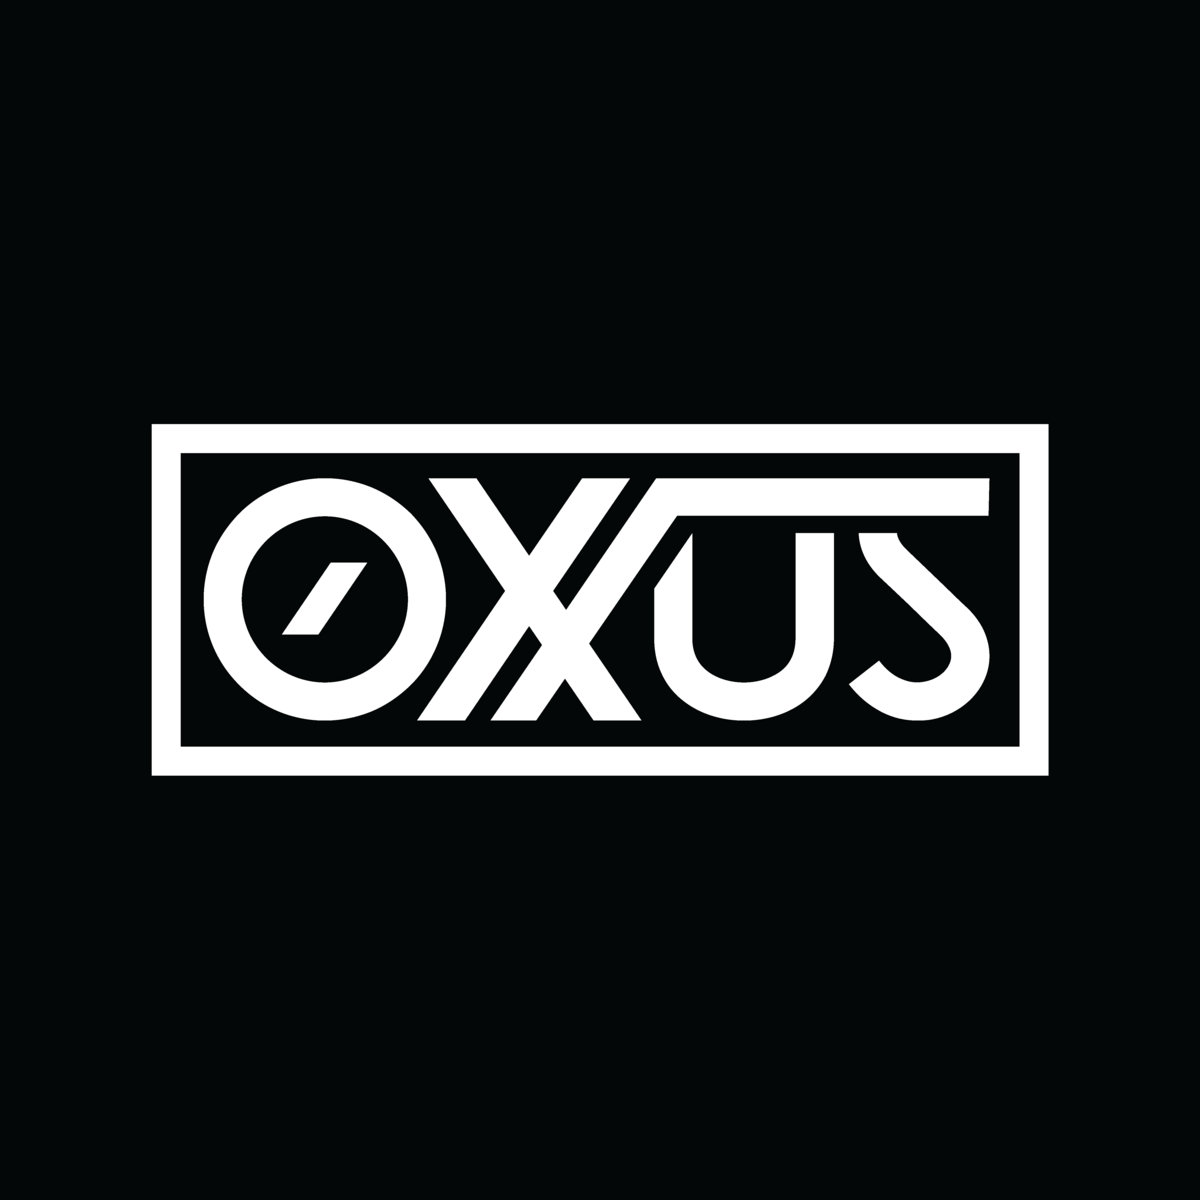 OXUS picture